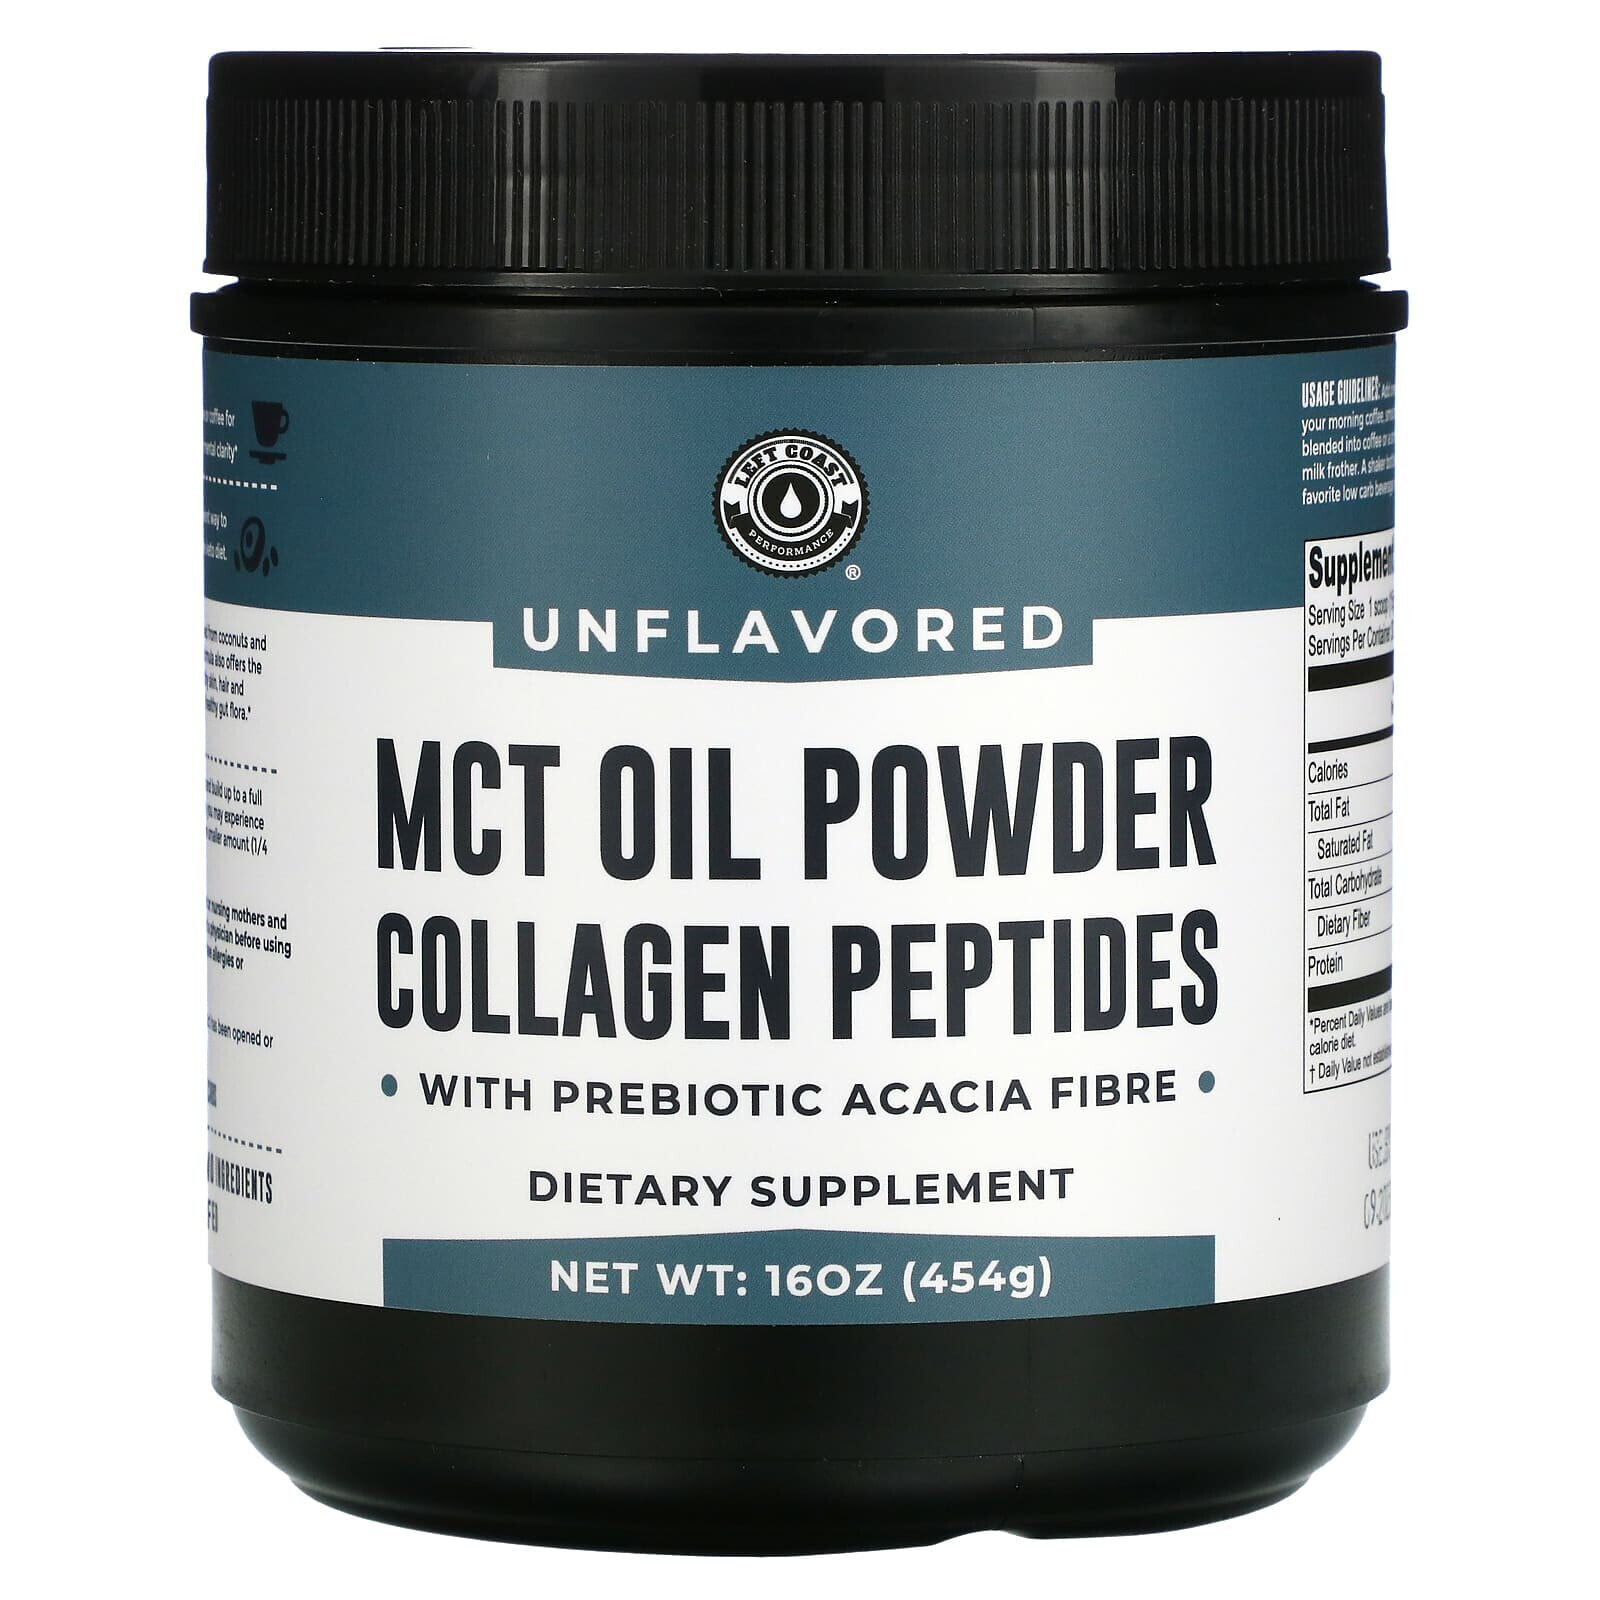 Left Coast Performance, MCT Oil Powder Collagen Peptides with Prebiotic Acacia Fibre, Vanilla, 16 oz (454 g)